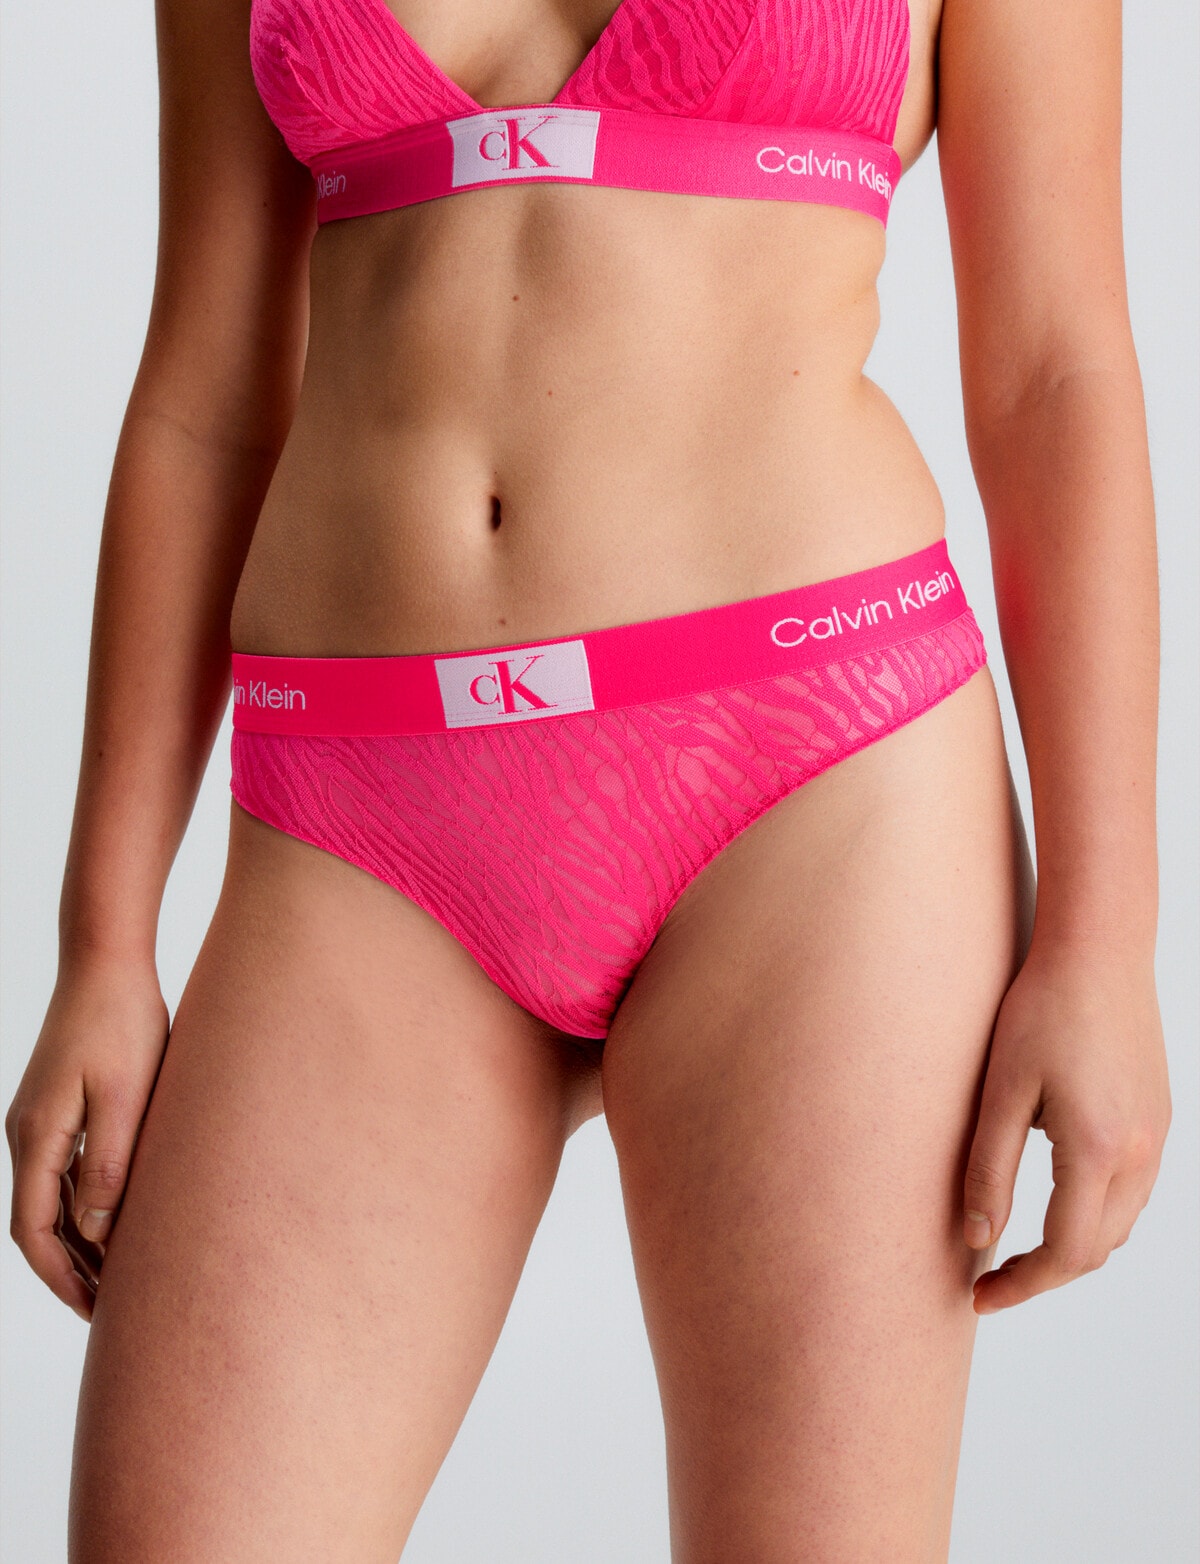 NZSALE  Calvin Klein Underwear Calvin Klein Underwear Women's